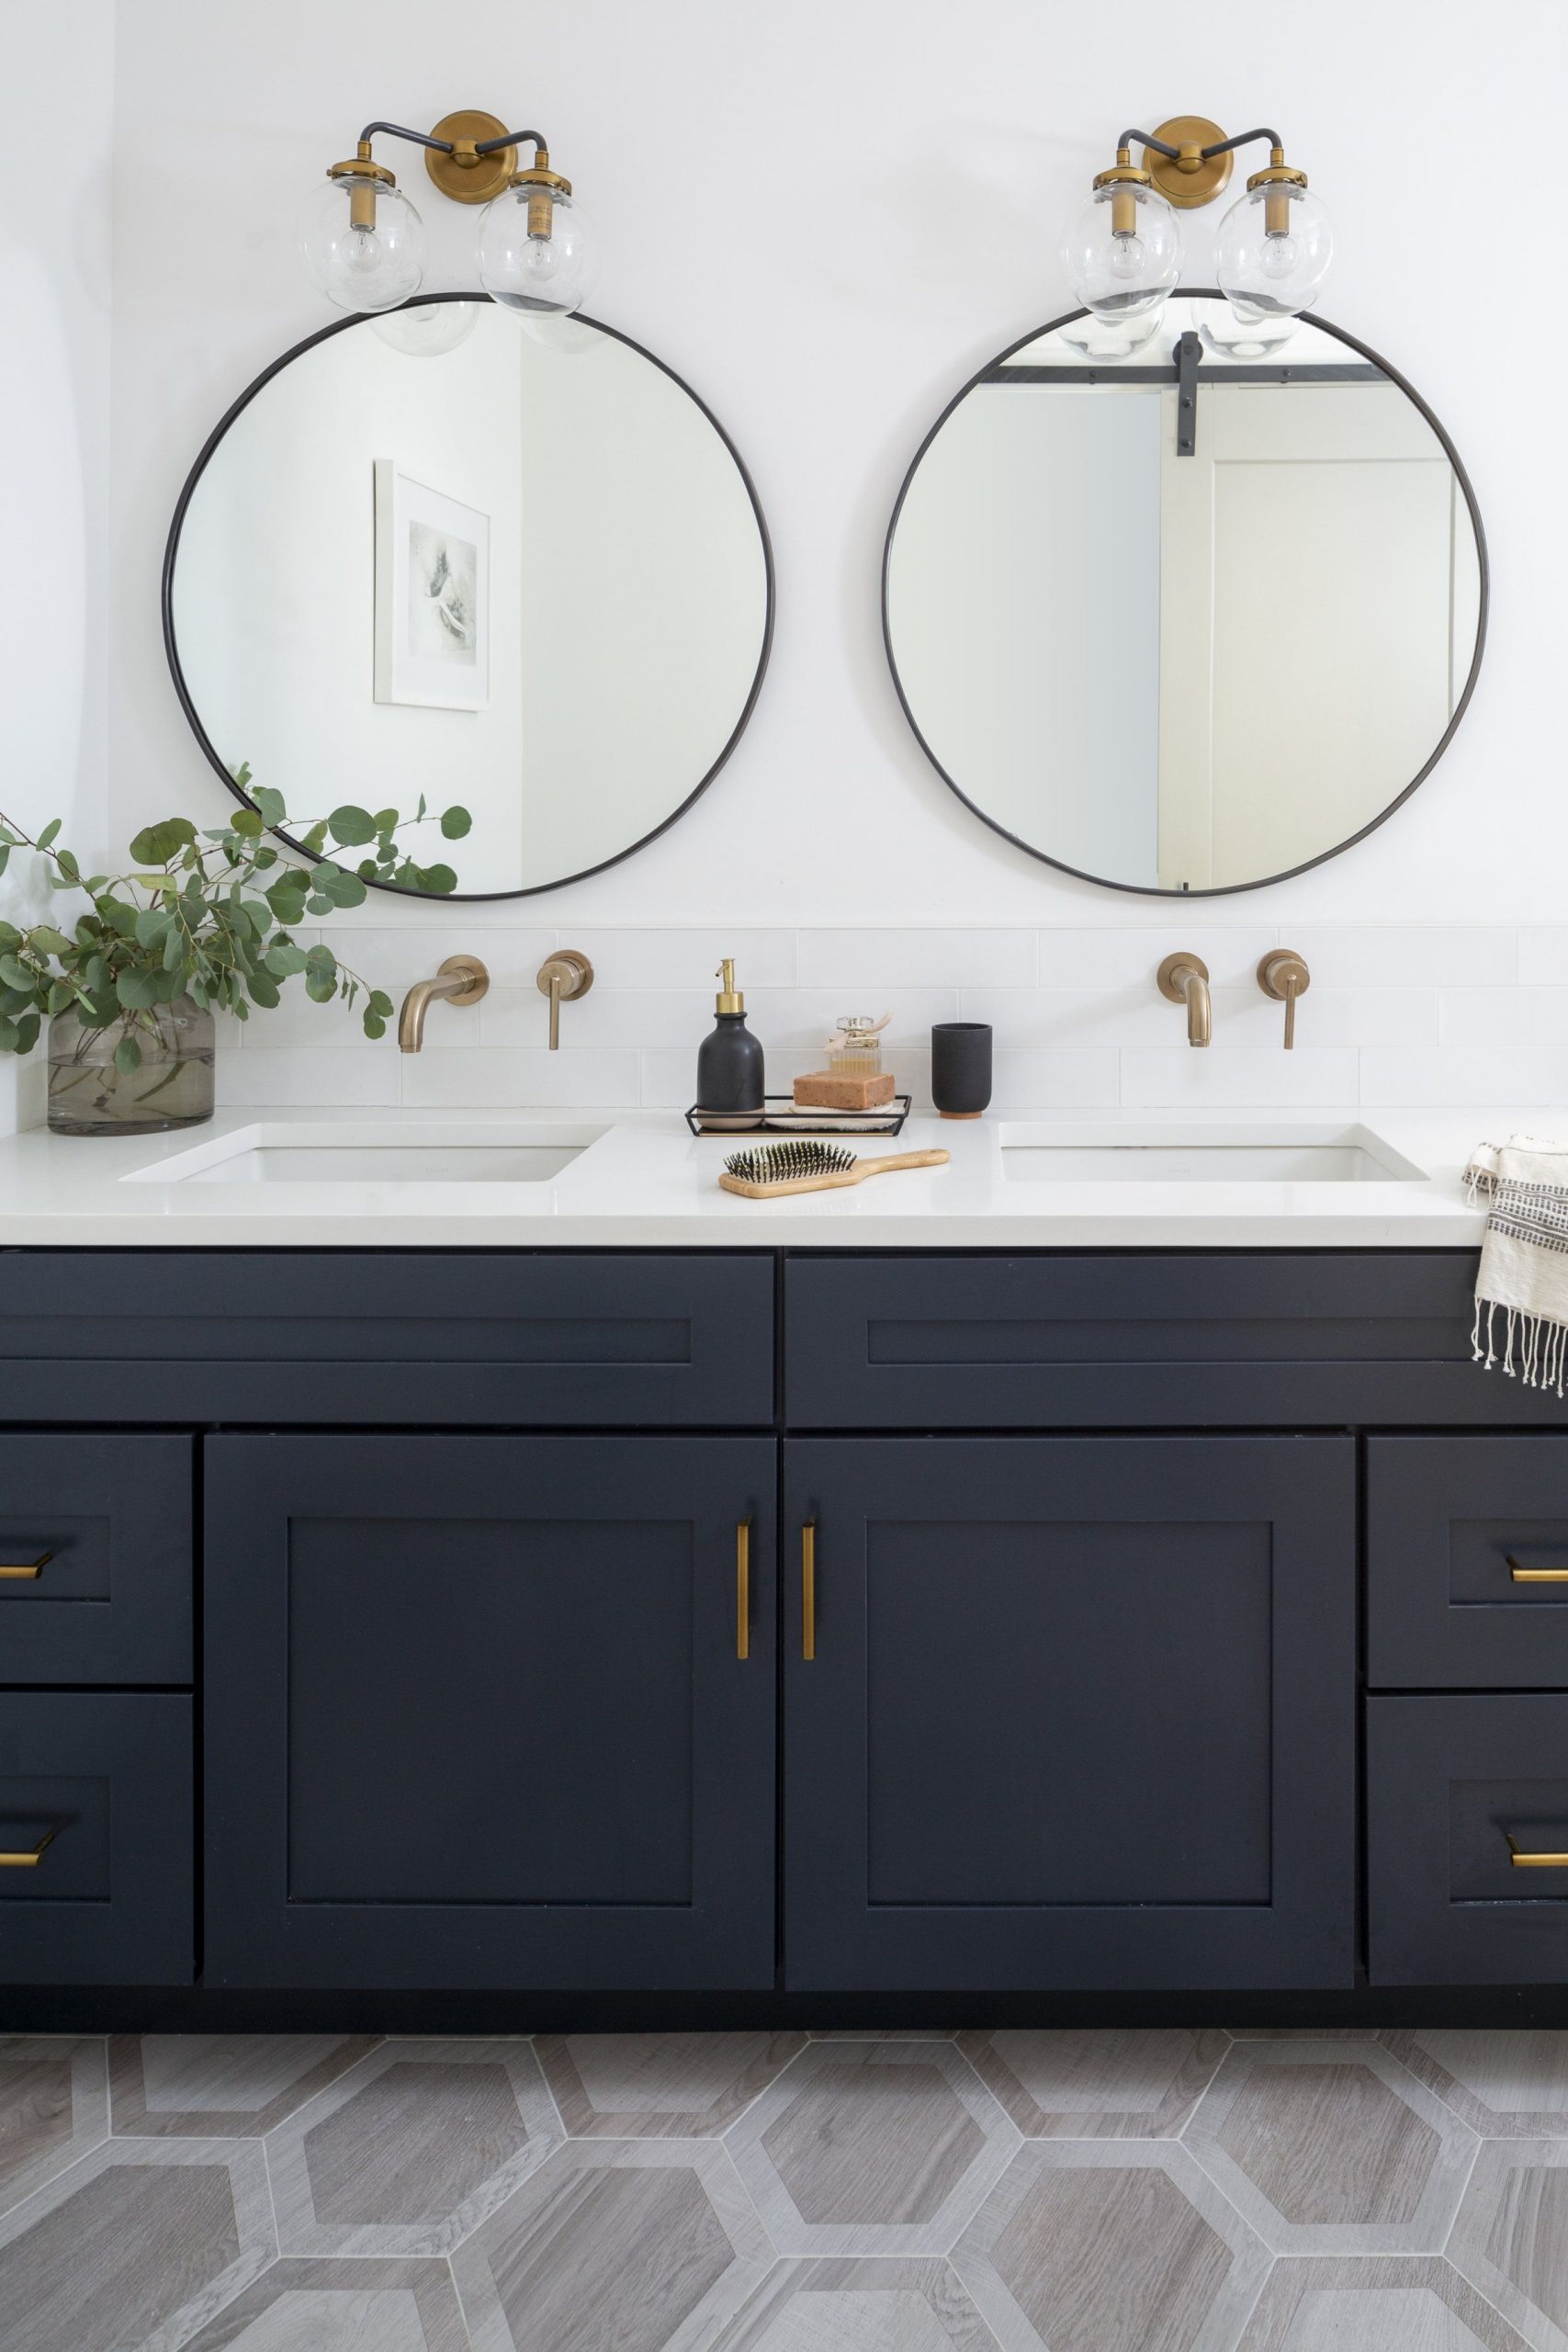 5 Most Popularity Double Sink Bathroom Vanity Ideas - Vankkids.com